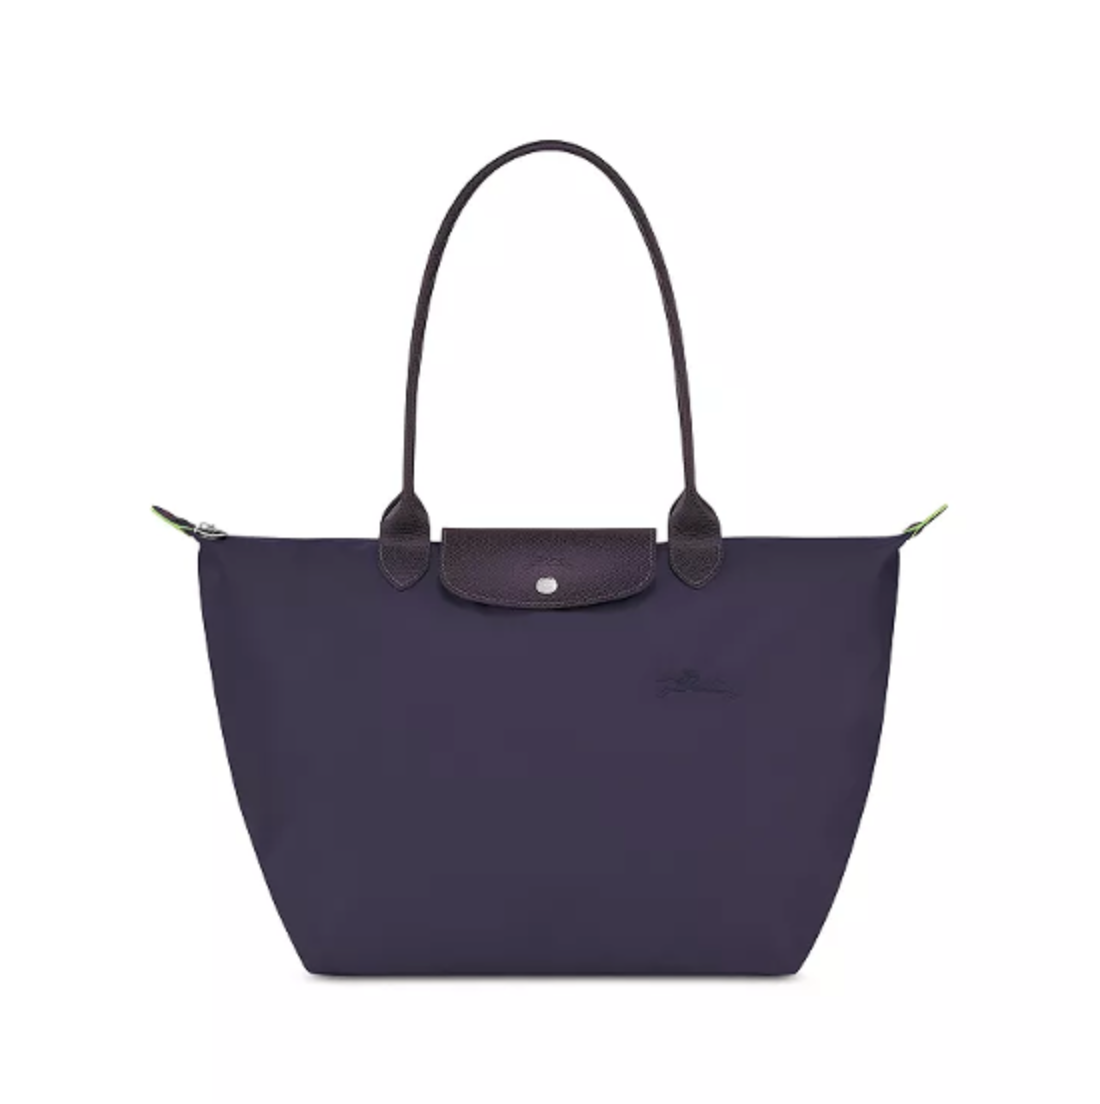 Laptop Tote Bags Women | Nylon Tote Bags Women | Nylon Tote Bags Handbags -  Women - Aliexpress